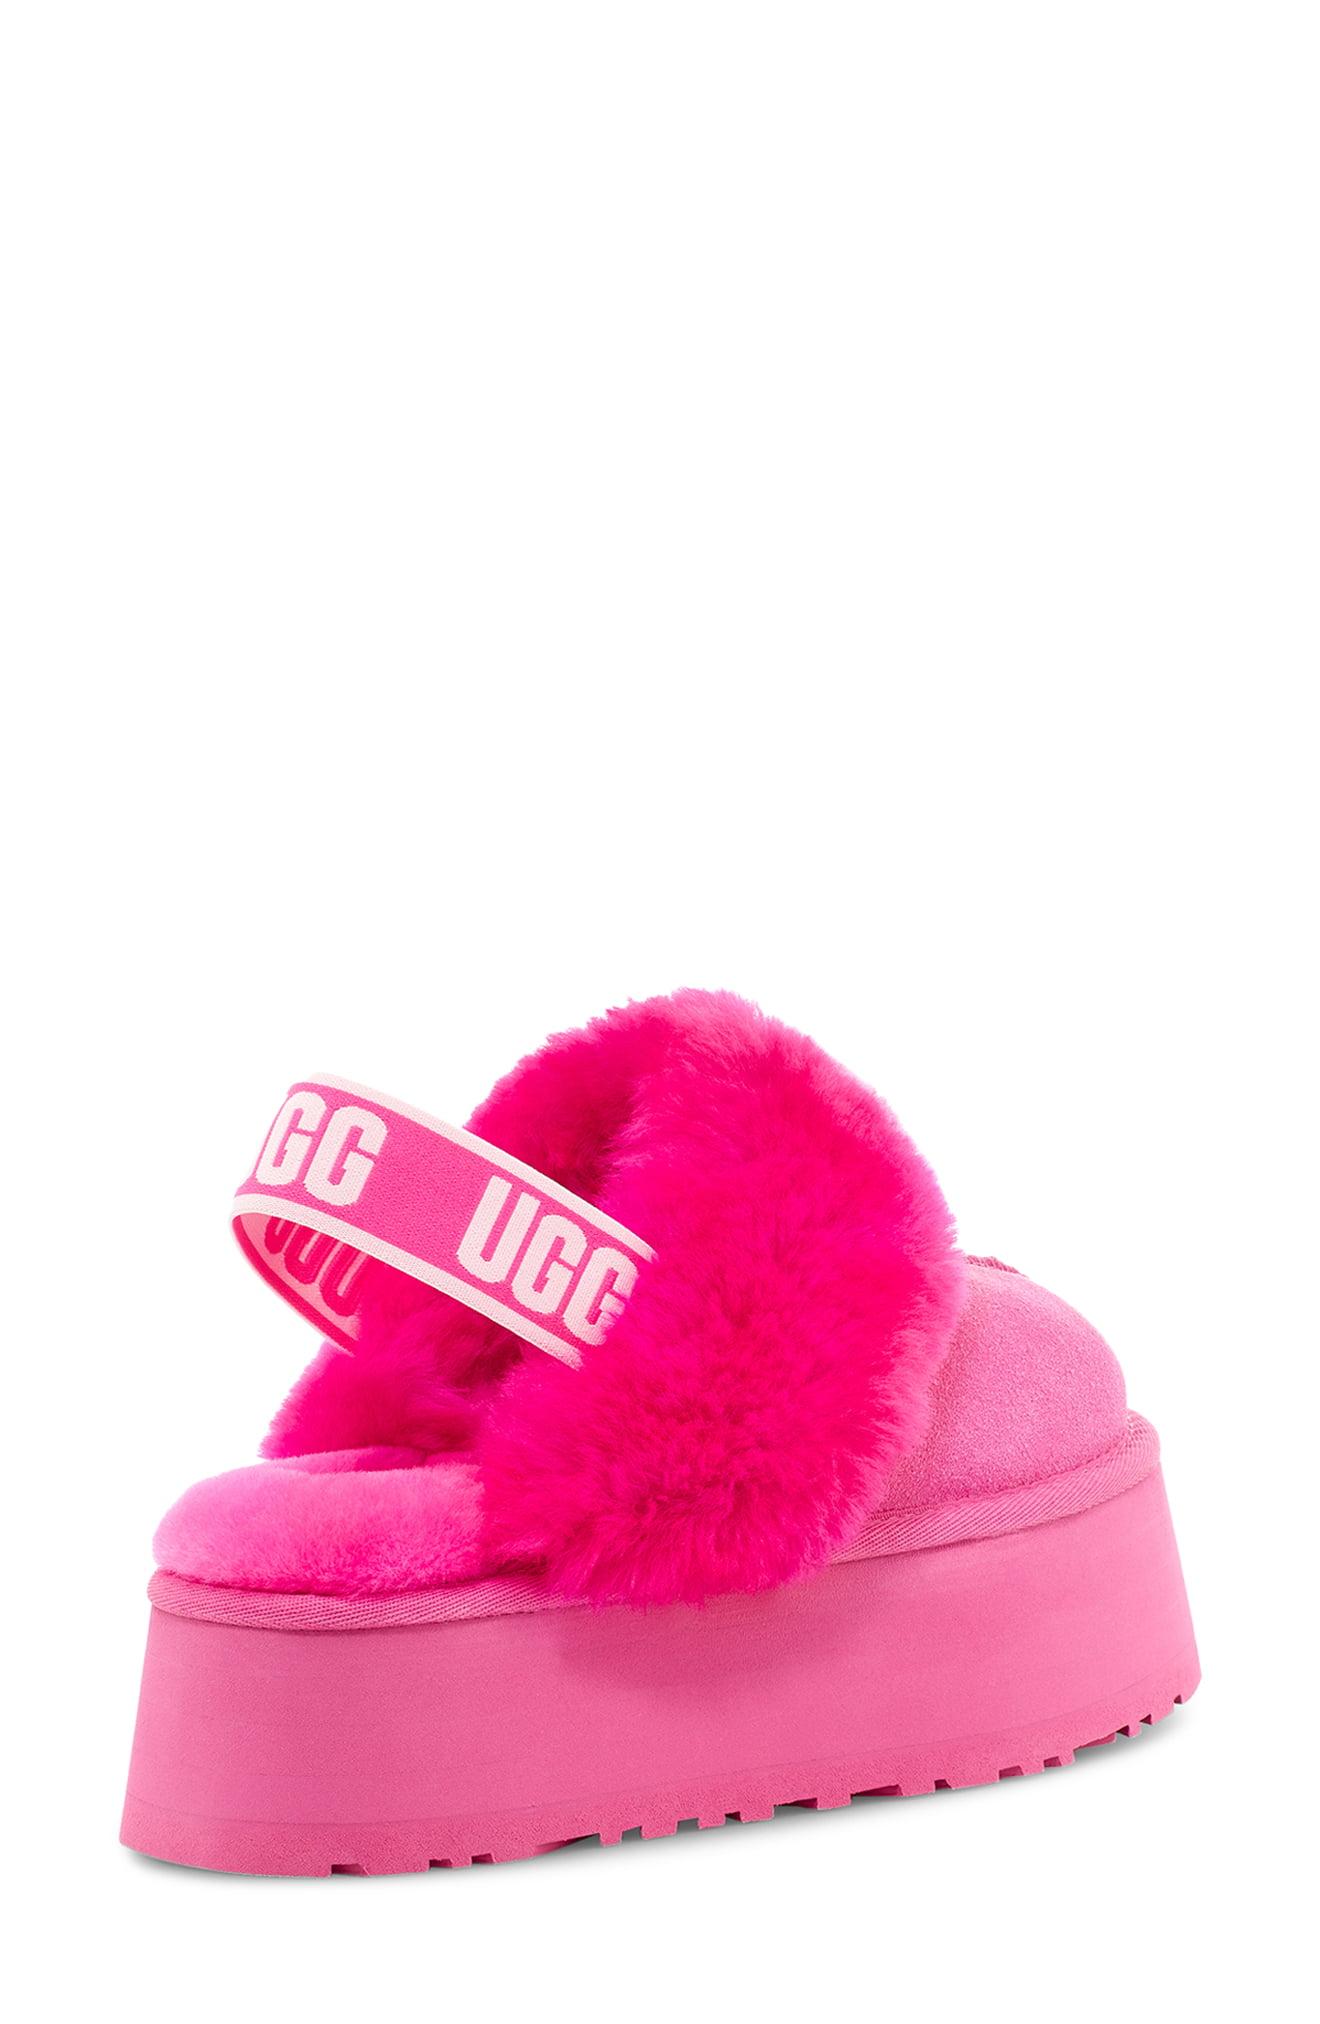 UGG Funkette Slipper in Pink | Lyst